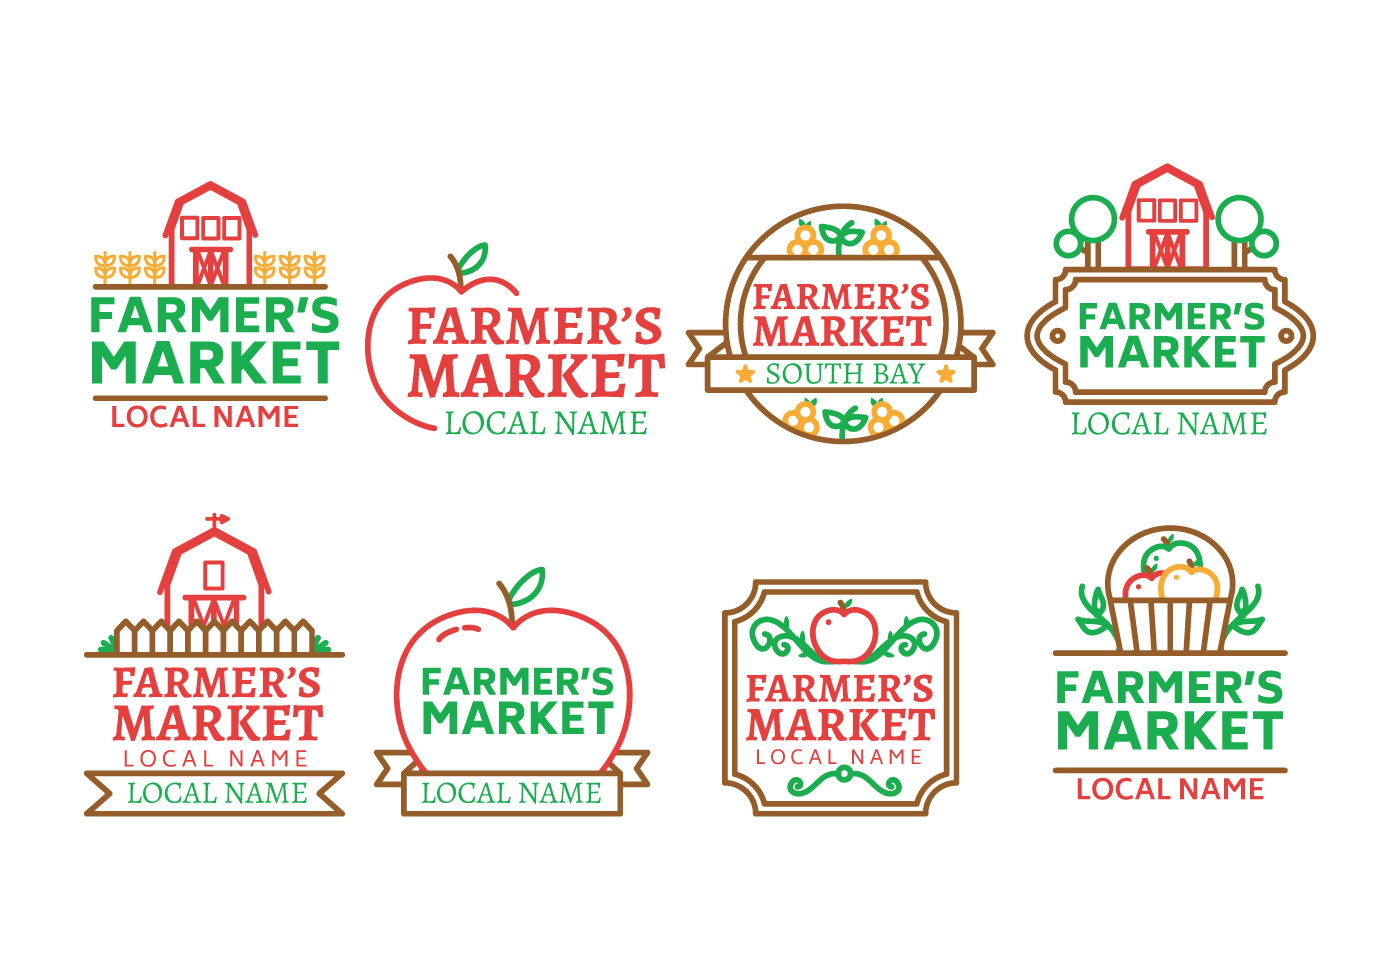 Farmers market logo vector - Download Free Vectors ...